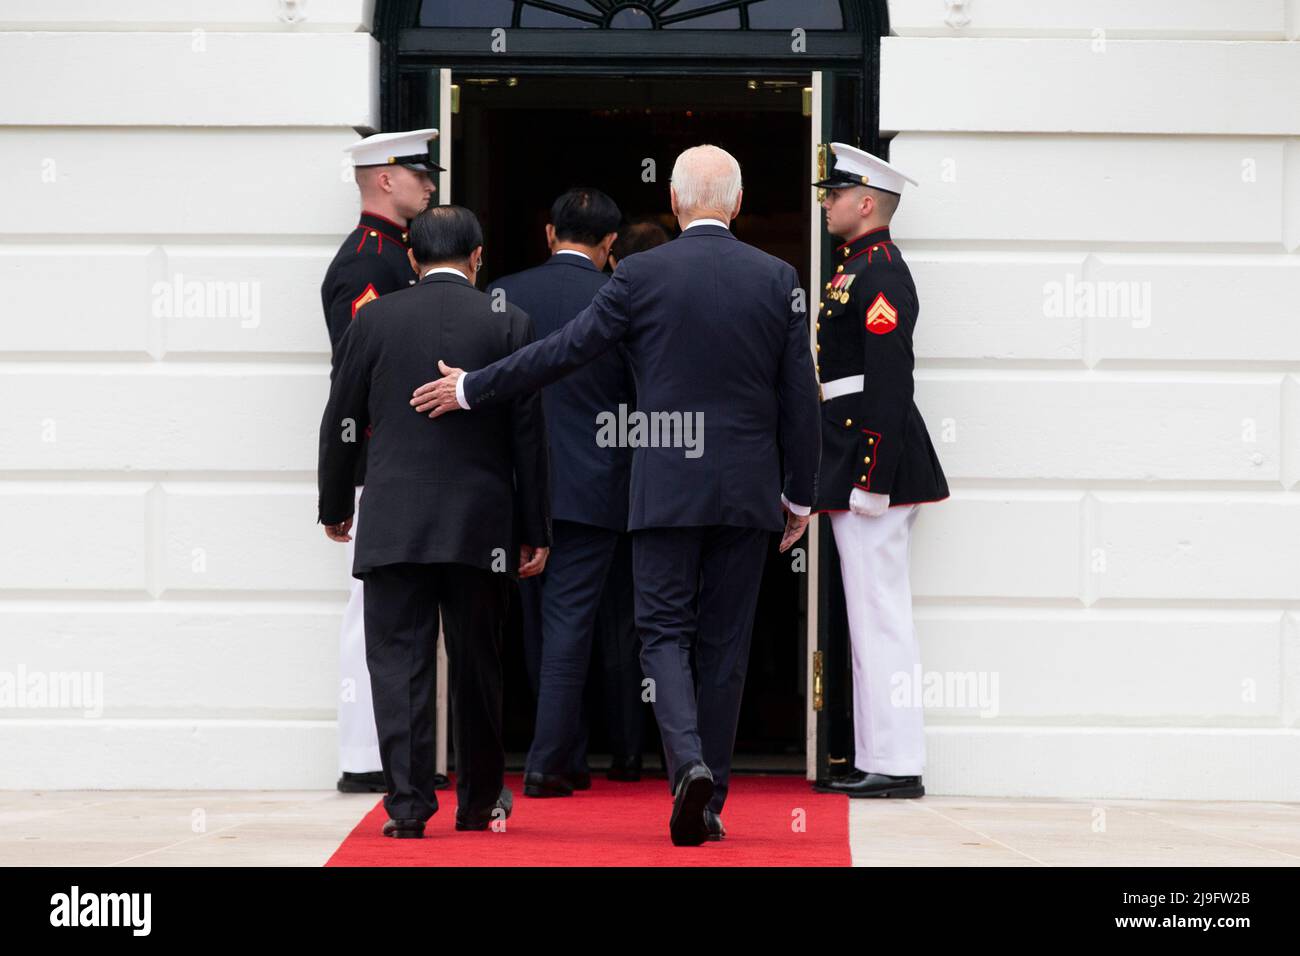 LE président AMÉRICAIN Joe Biden (C-R) revient à la Maison Blanche avec les dirigeants du Sommet spécial États-Unis-ASEAN à la suite d'une photo de famille sur la pelouse sud de la Maison Blanche à Washington, DC, Etats-Unis, 12 mars 2022. Biden a accueilli les dirigeants des pays de l'ANASE et le Secrétaire général de l'ANASE à la Maison Blanche, alors que le Sommet spécial États-Unis-ANASE se réunit, le deuxième Sommet spécial depuis 2016. Le sommet devrait aborder la réponse de la COVID-19 et la sécurité sanitaire mondiale, le changement climatique et le développement durable. Crédit: Michael Reynolds/Pool via CNP Banque D'Images